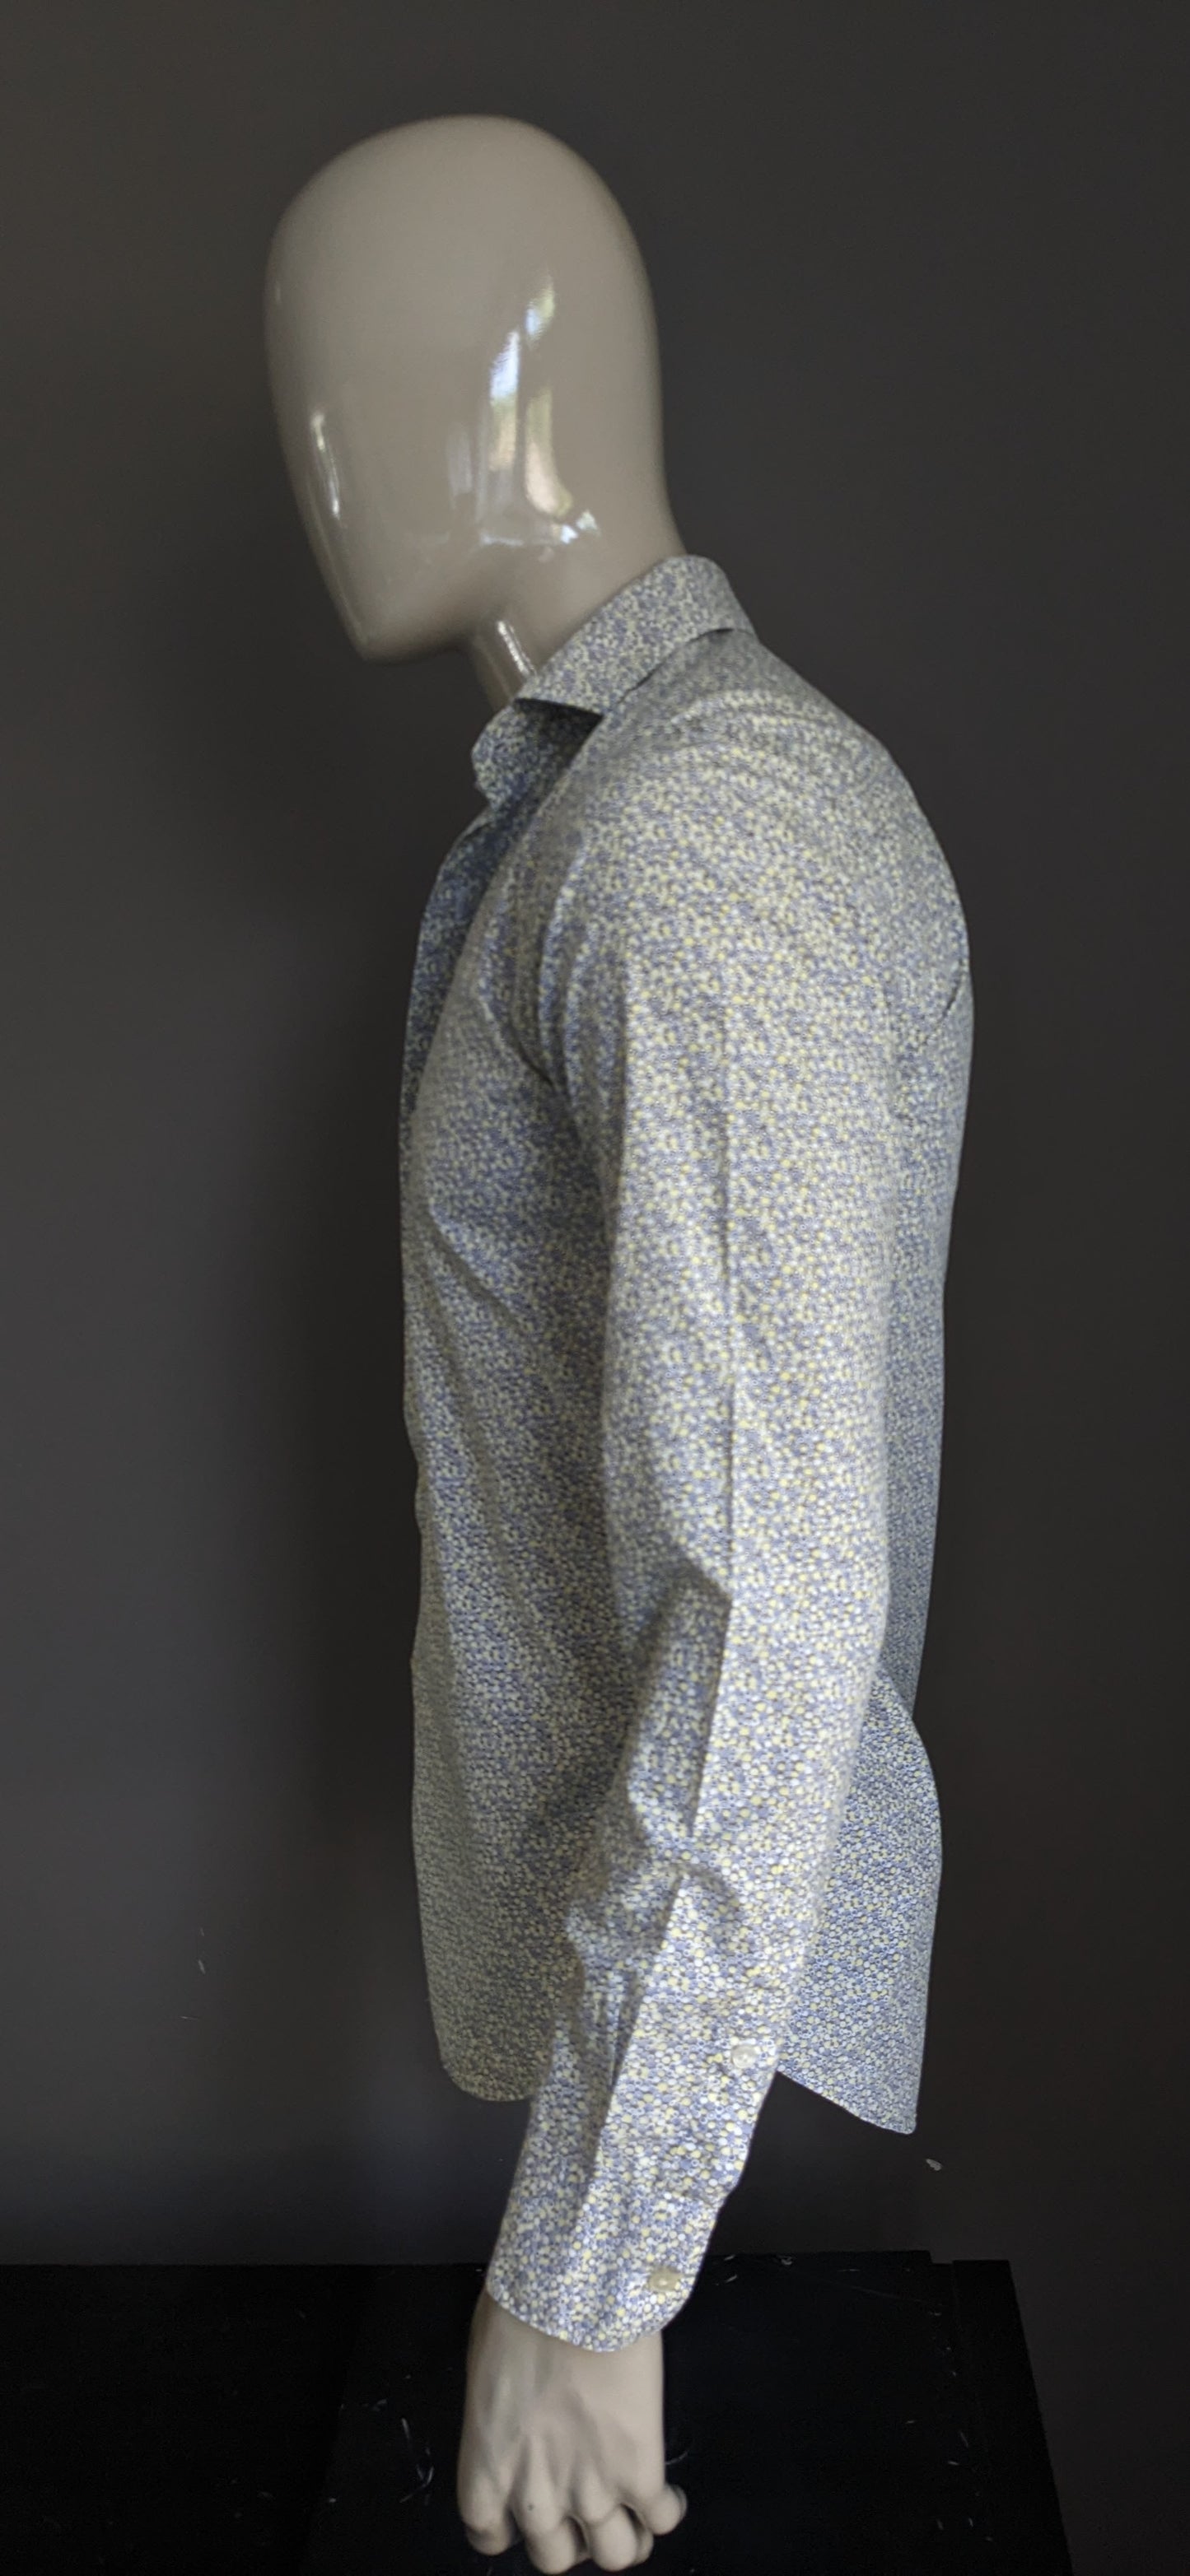 McGregor Distinction overhemd. Geel Grijs Blauwe moderne print. Maat 38 / S. Tailored Fit.